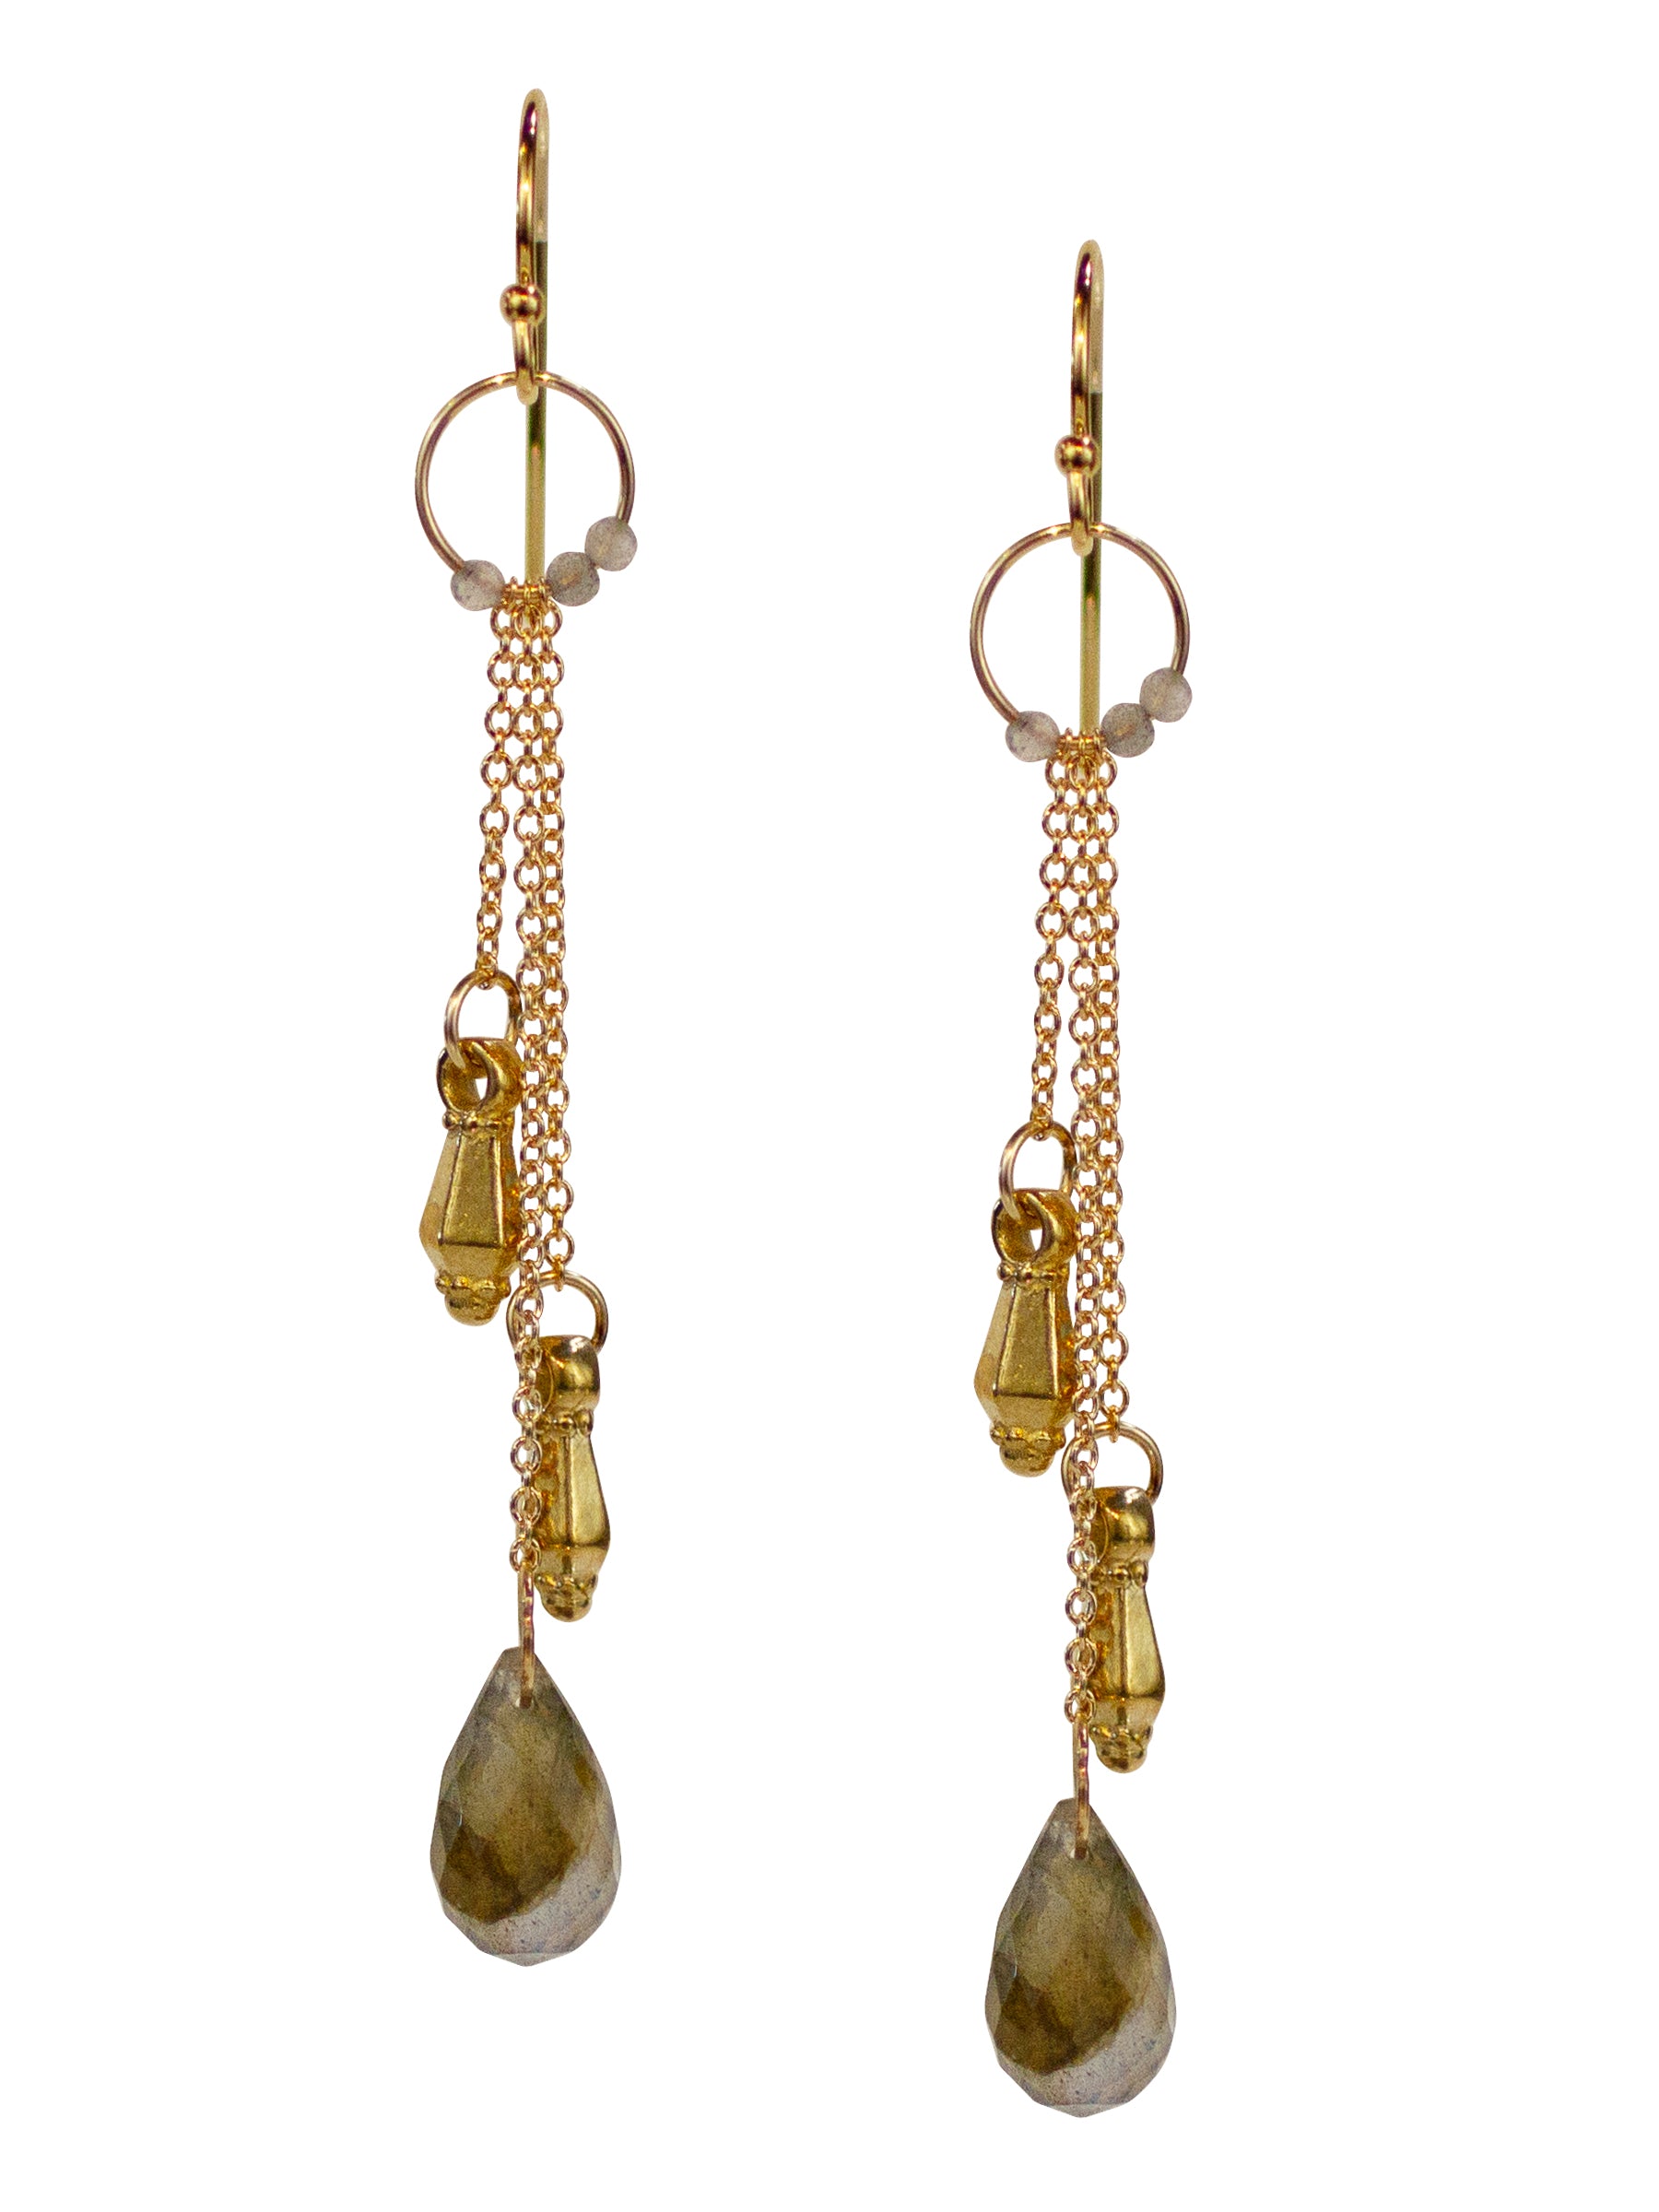 fcity.in - Stylish Butterfly Chain Latkan Earrings For Women Pearl Crystal